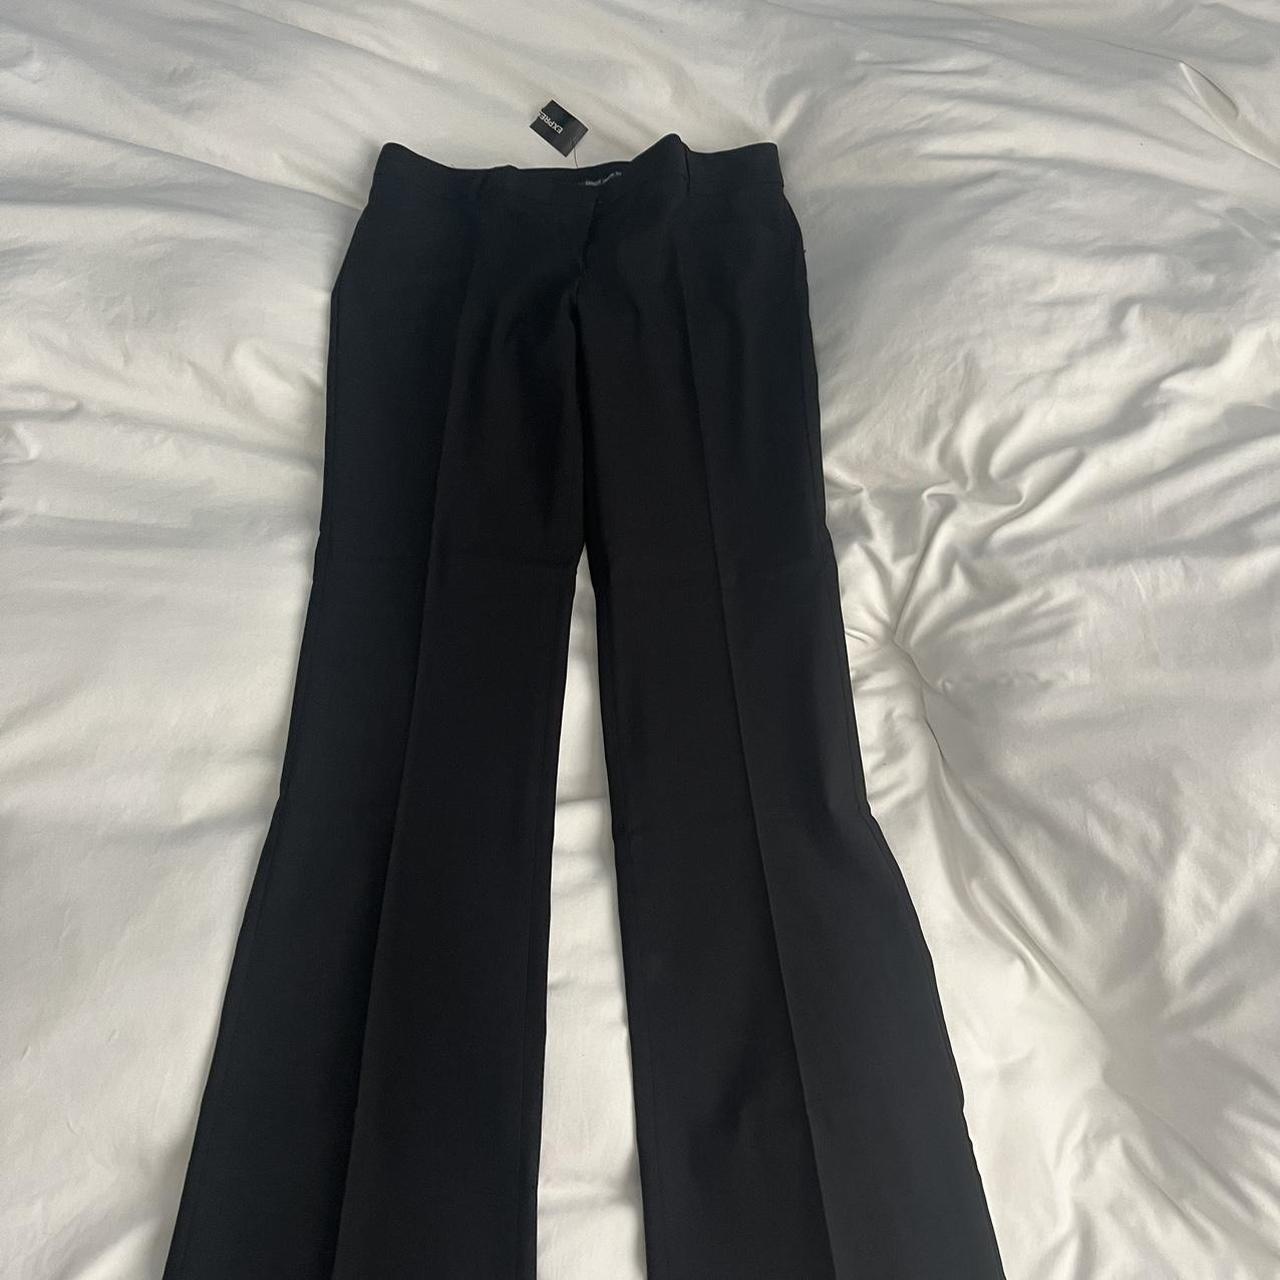 Vince Camuto Black Dress Pants Size 12 Good pre - Depop